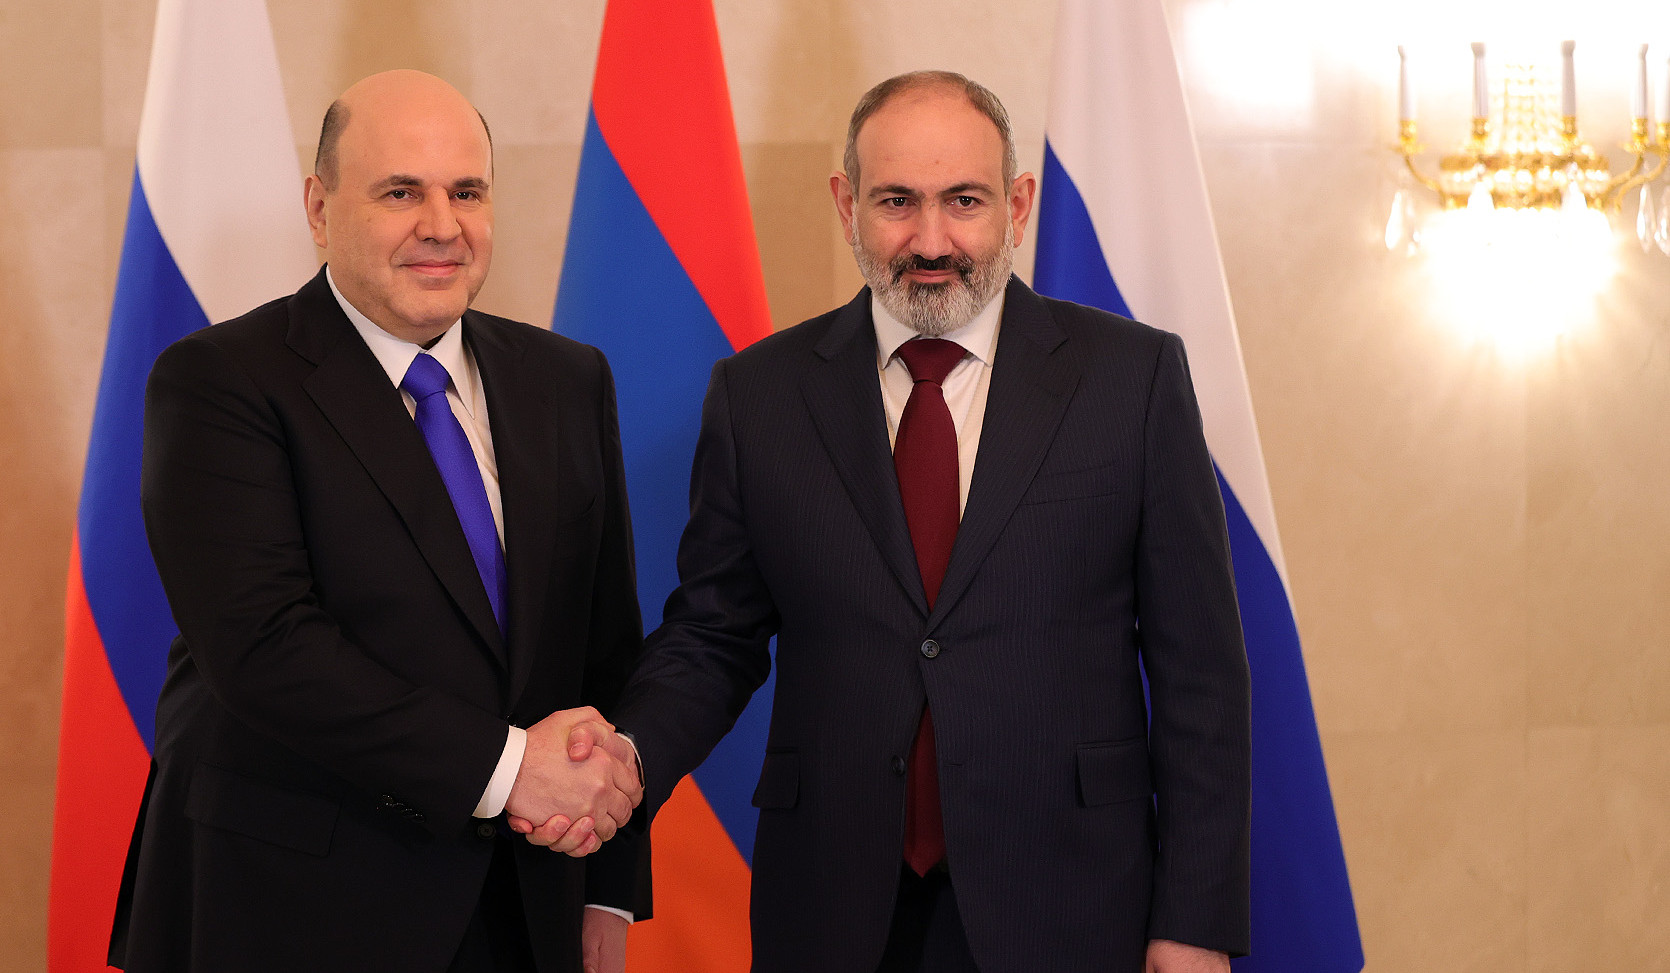 Никол Пашинян и Михаил Мишустин обсудили широкий круг вопросов армяно-российского сотрудничества в сфере экономики